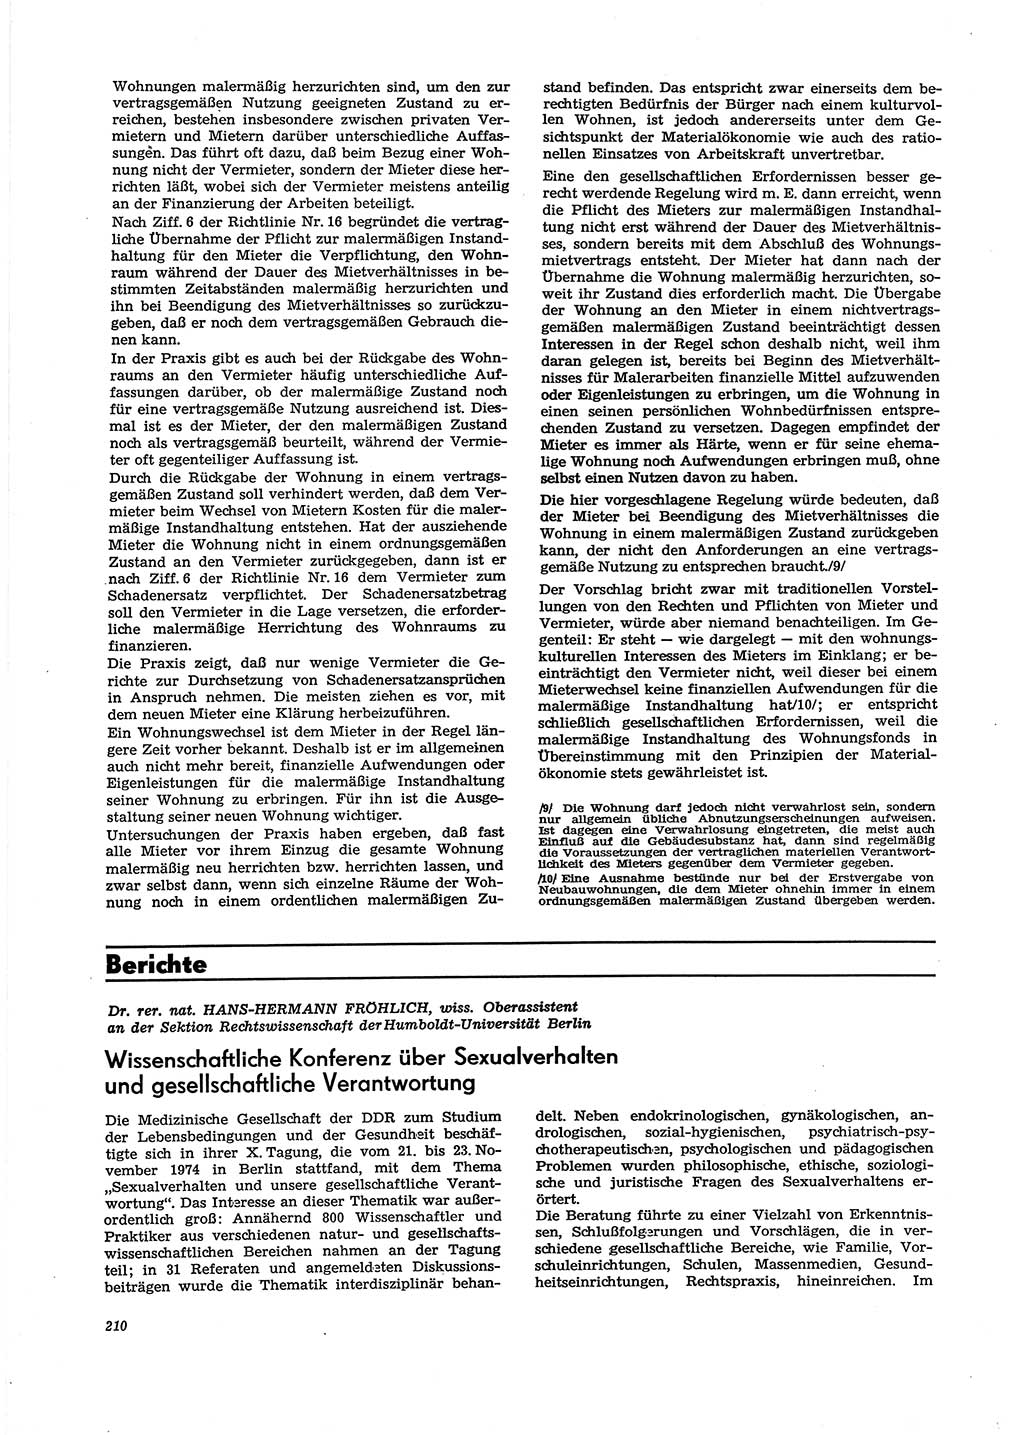 Neue Justiz (NJ), Zeitschrift für Recht und Rechtswissenschaft [Deutsche Demokratische Republik (DDR)], 29. Jahrgang 1975, Seite 210 (NJ DDR 1975, S. 210)